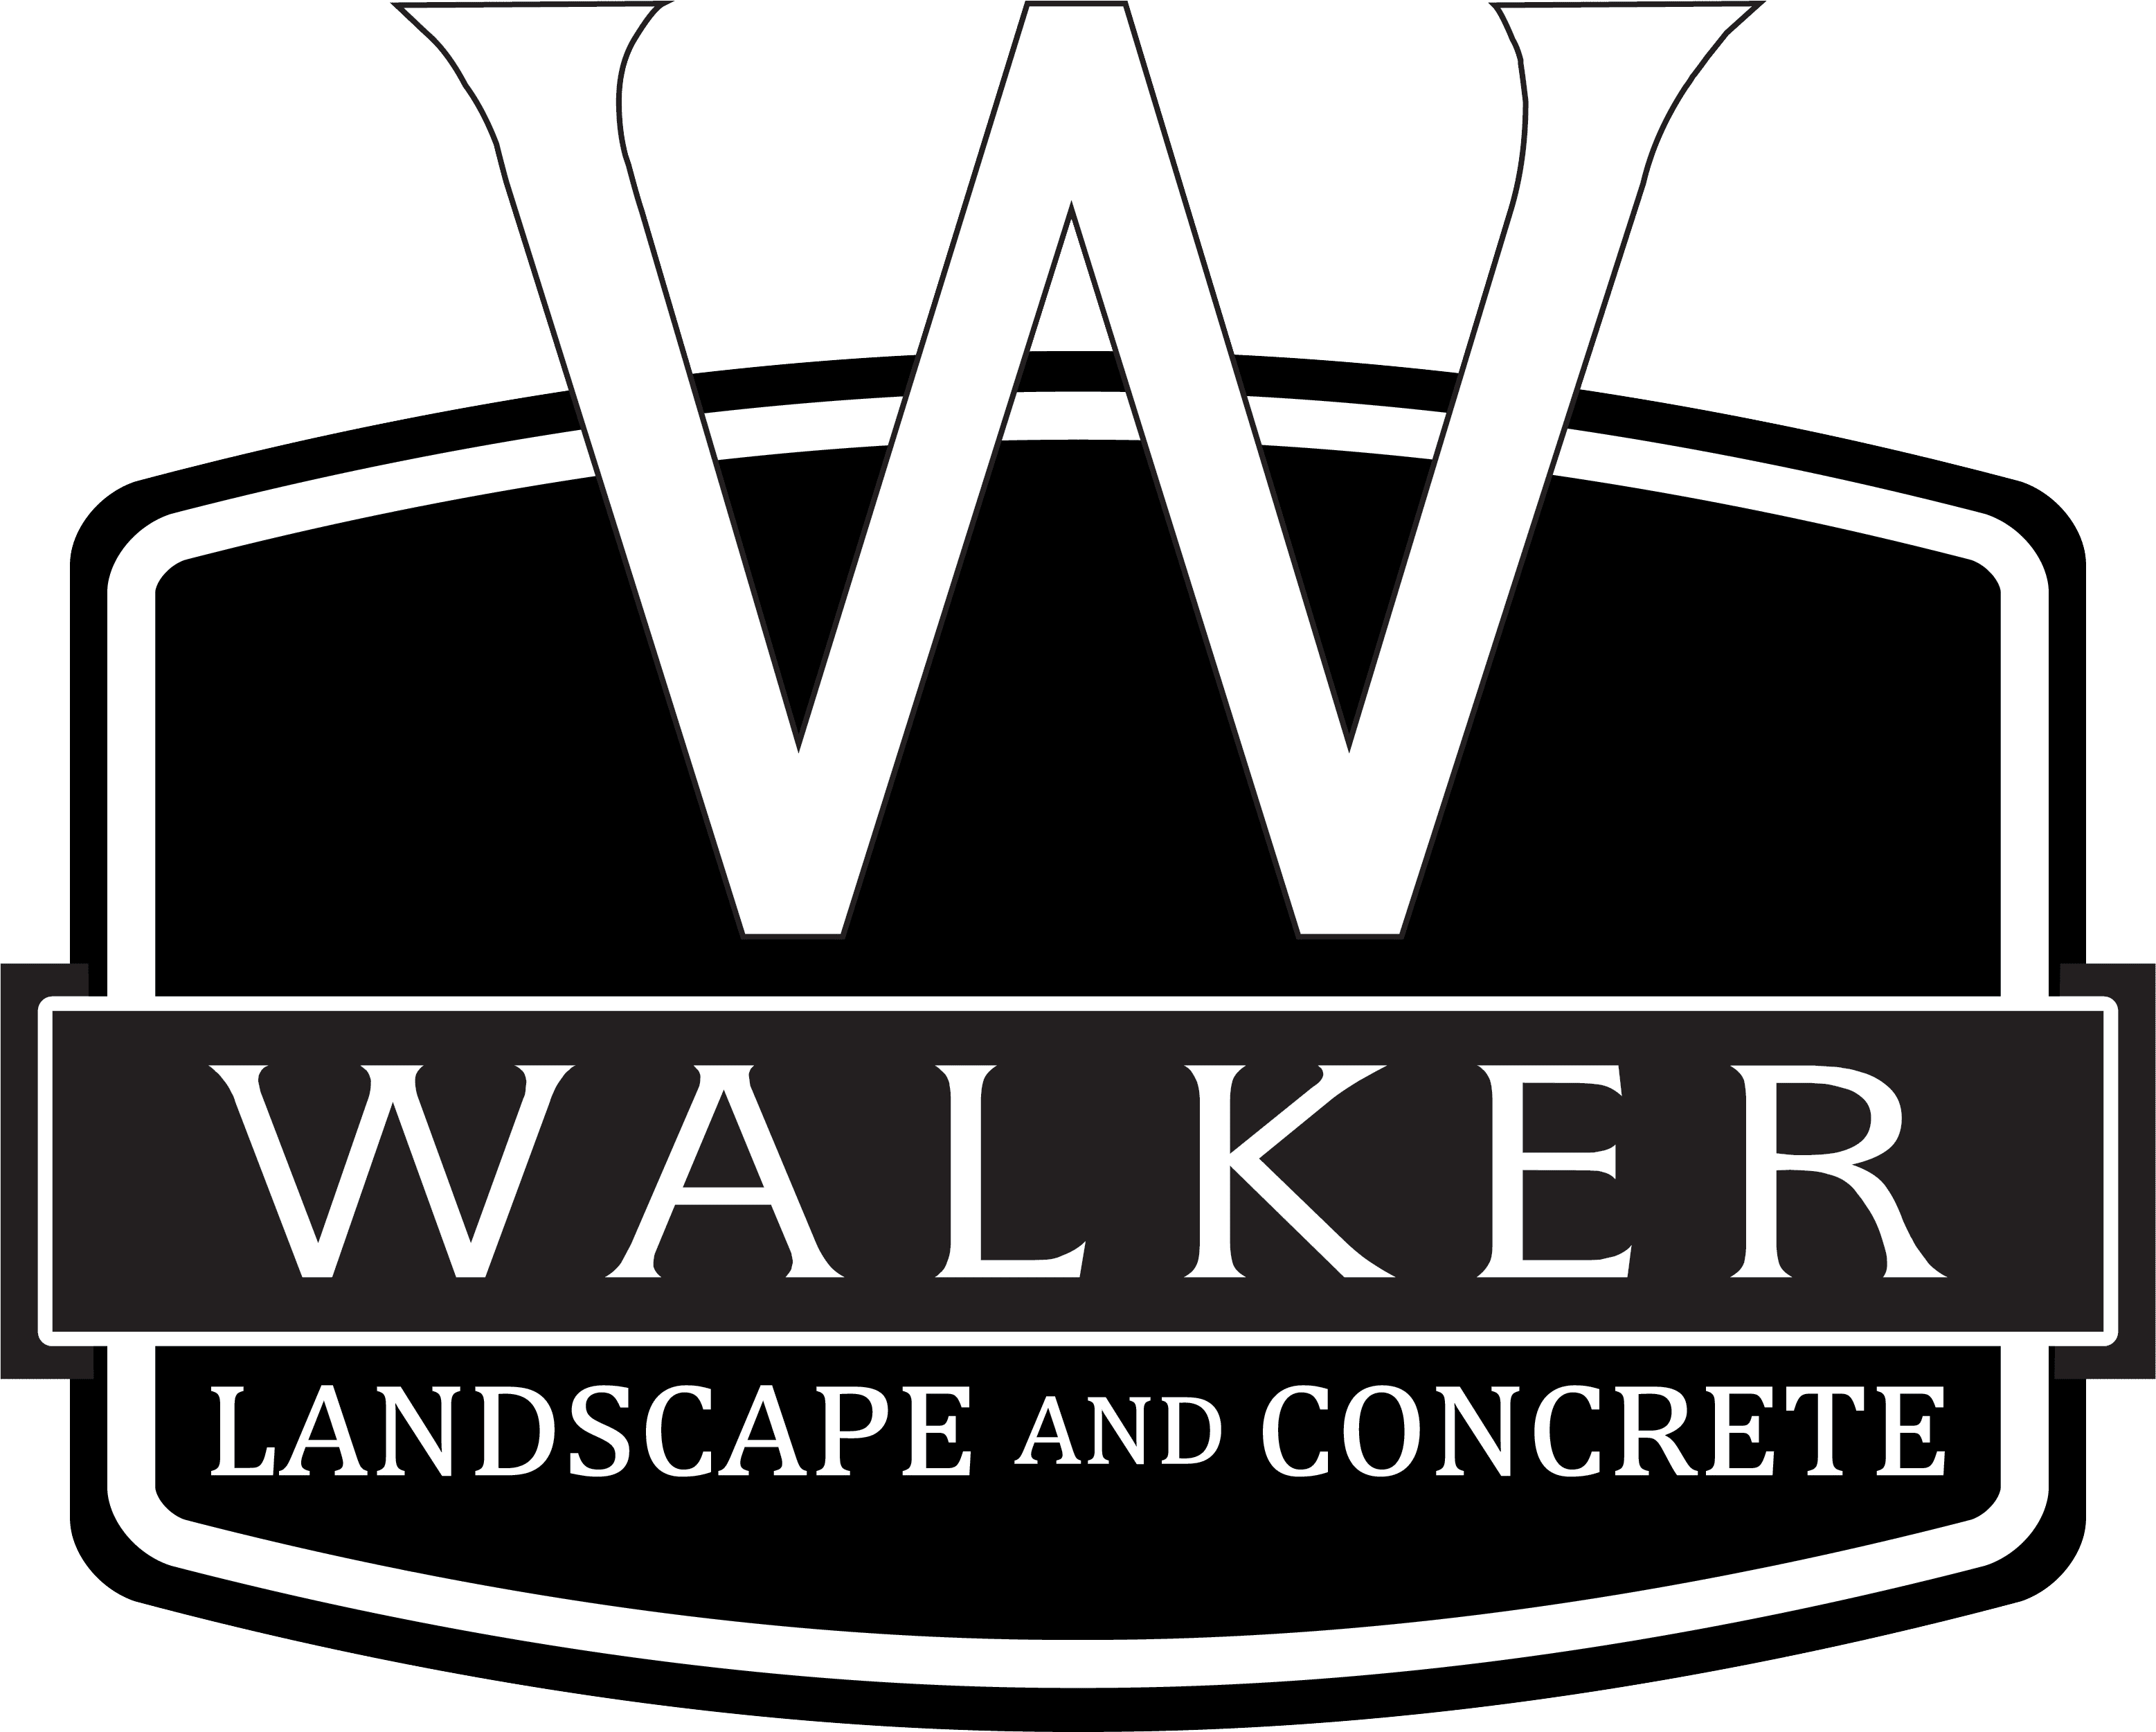 Walker Landscape and Concrete